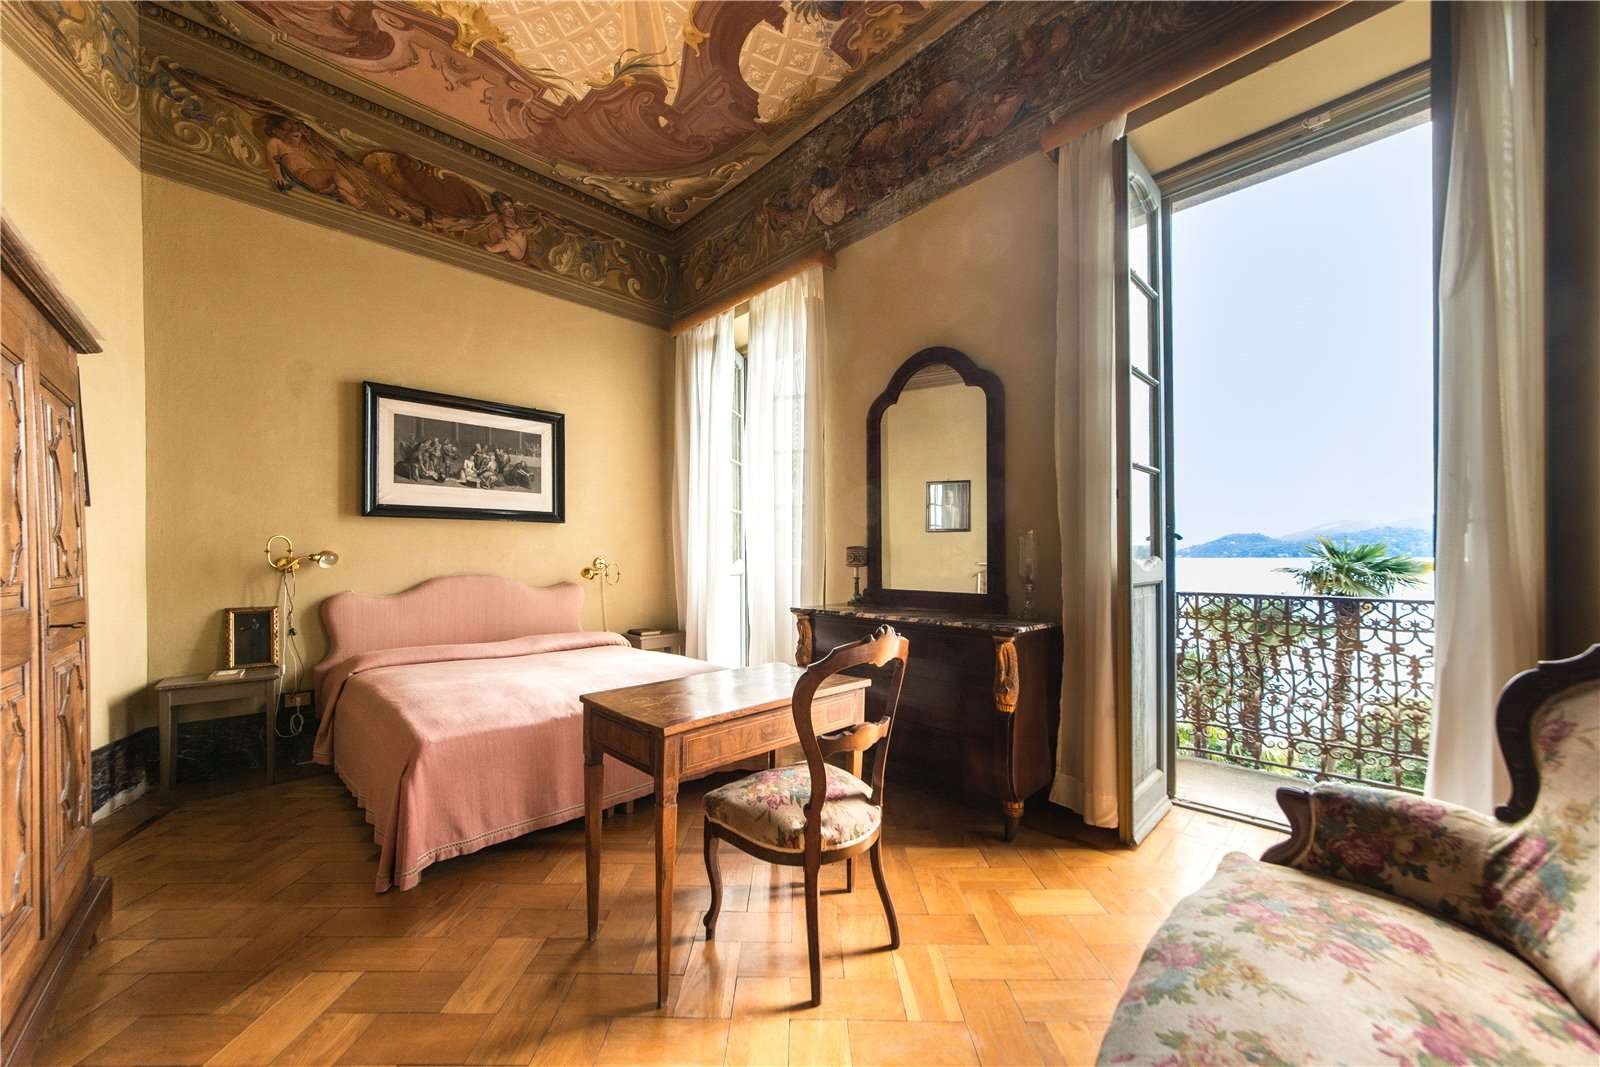 Francis YorkVilla L'Eremitaggio: Historic Villa On Lake Maggiore 17.jpg